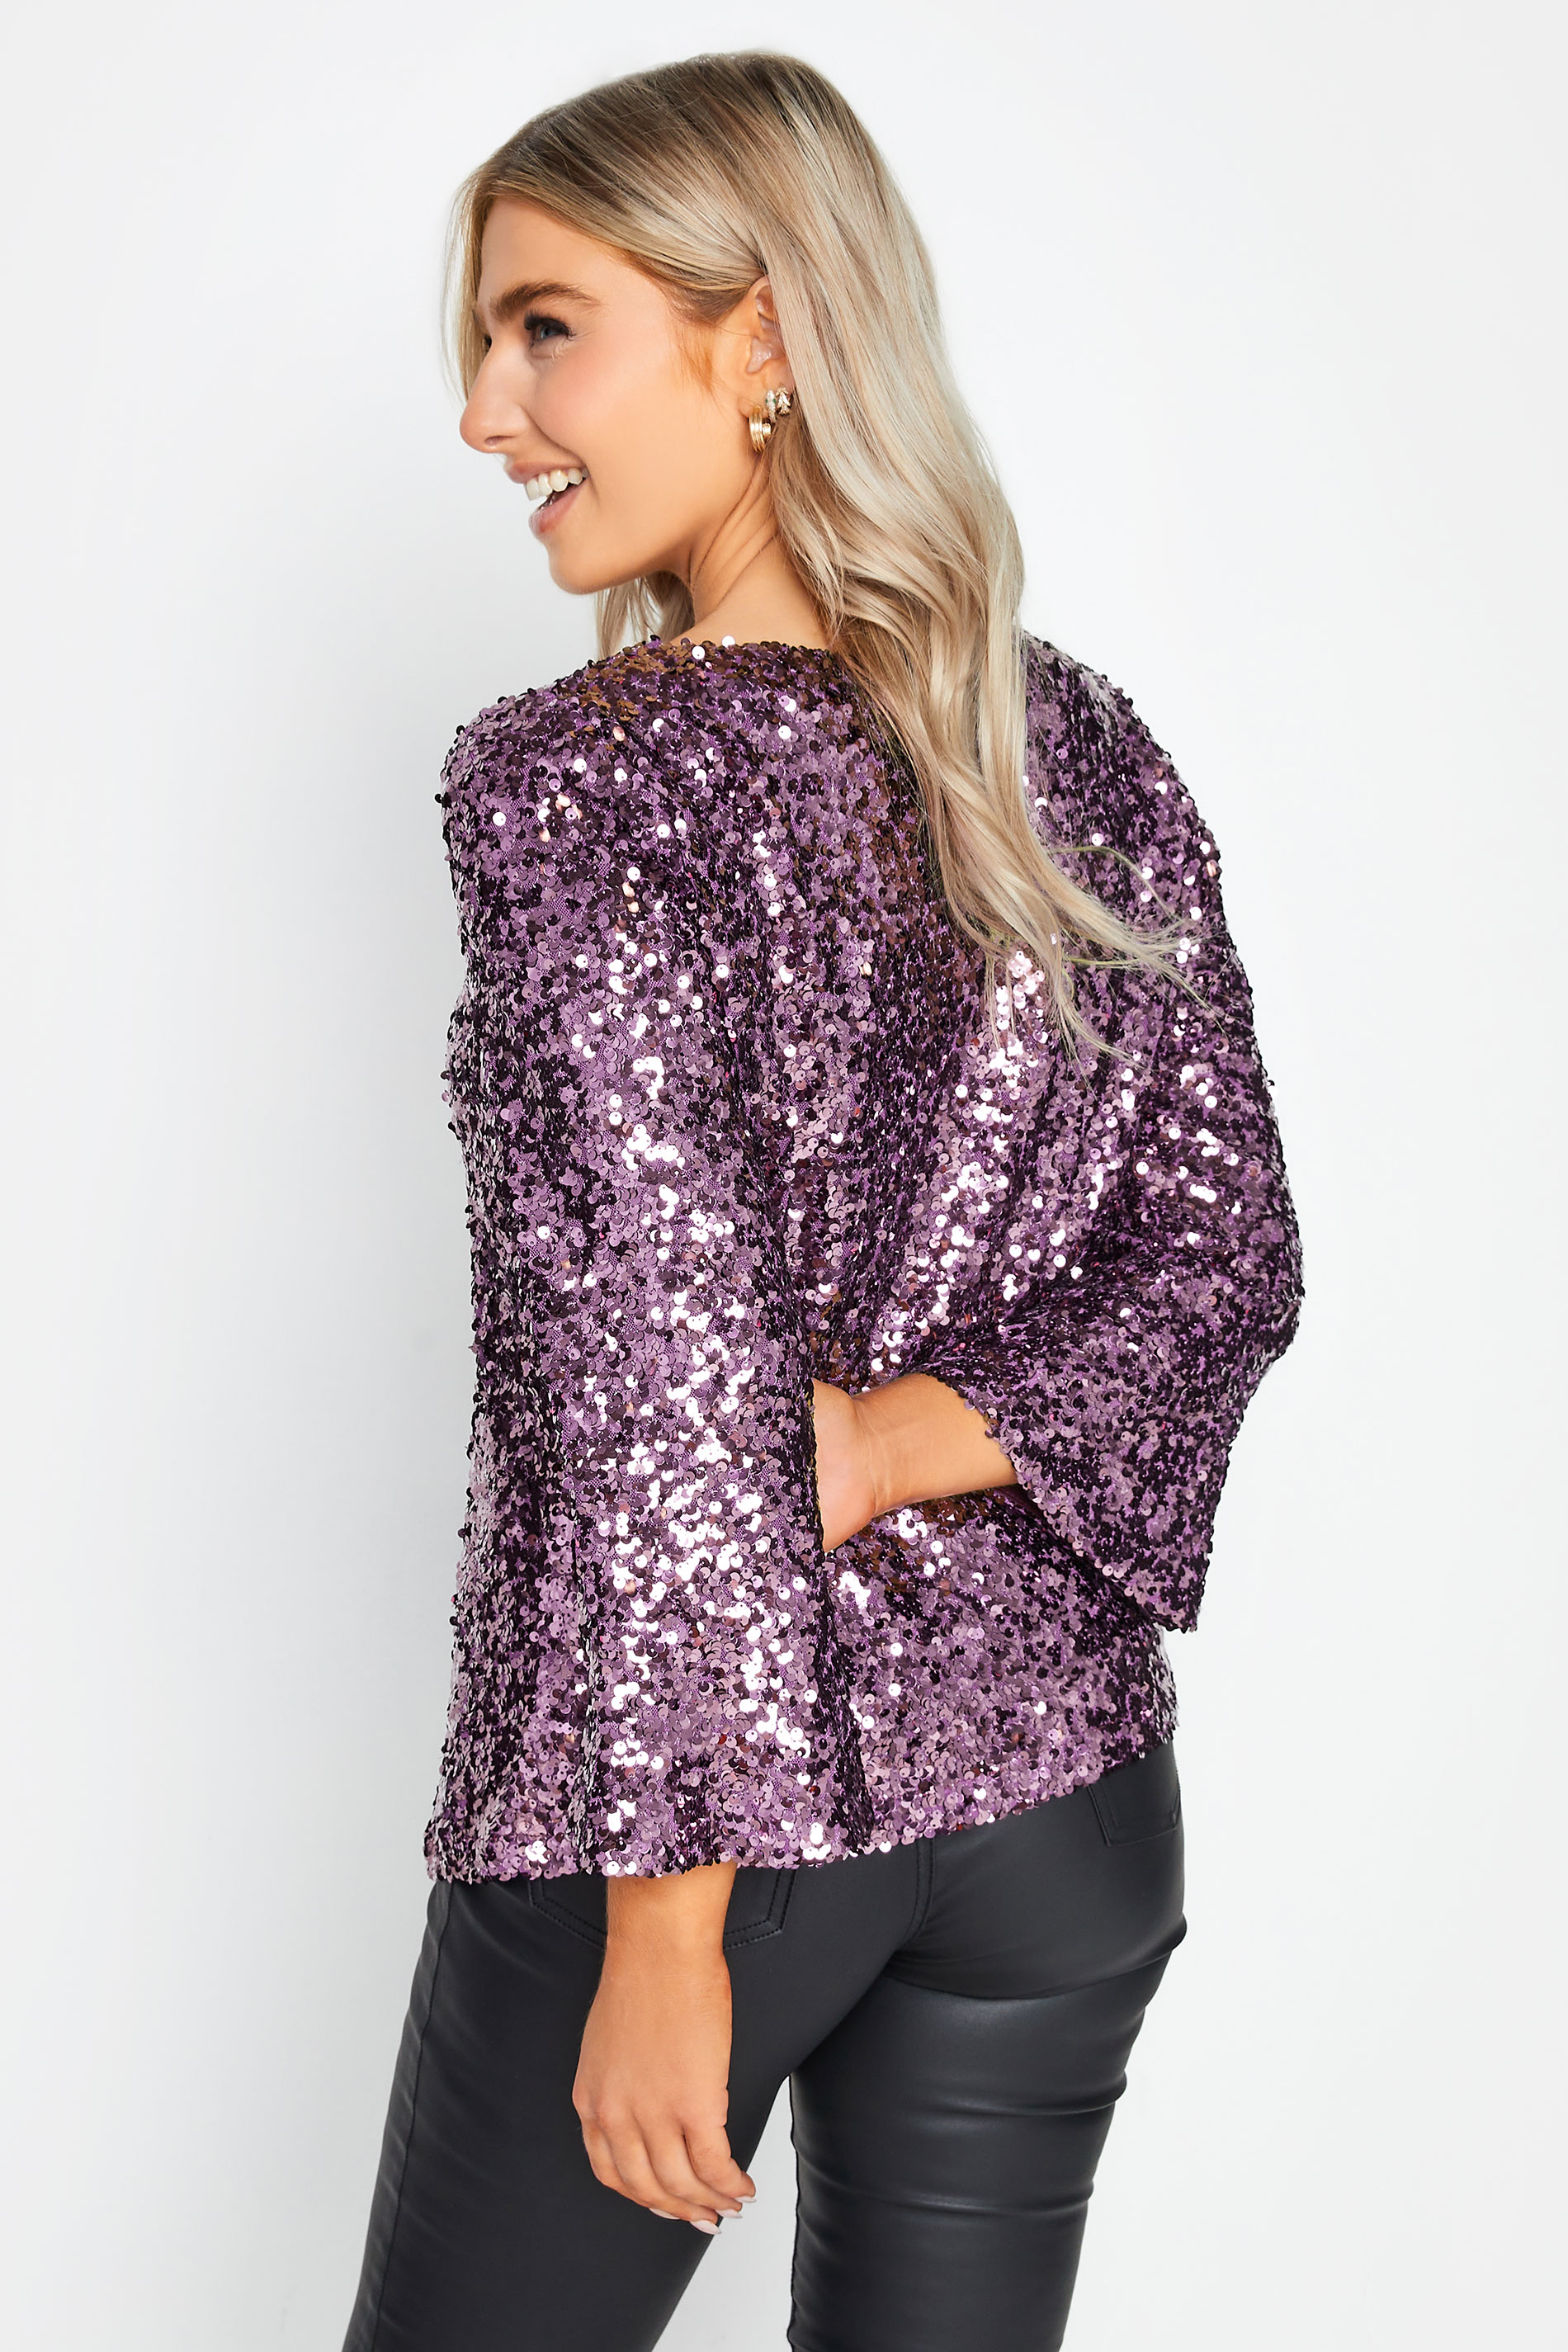 M&Co Purple Flute Sleeve Sequin Top | M&Co